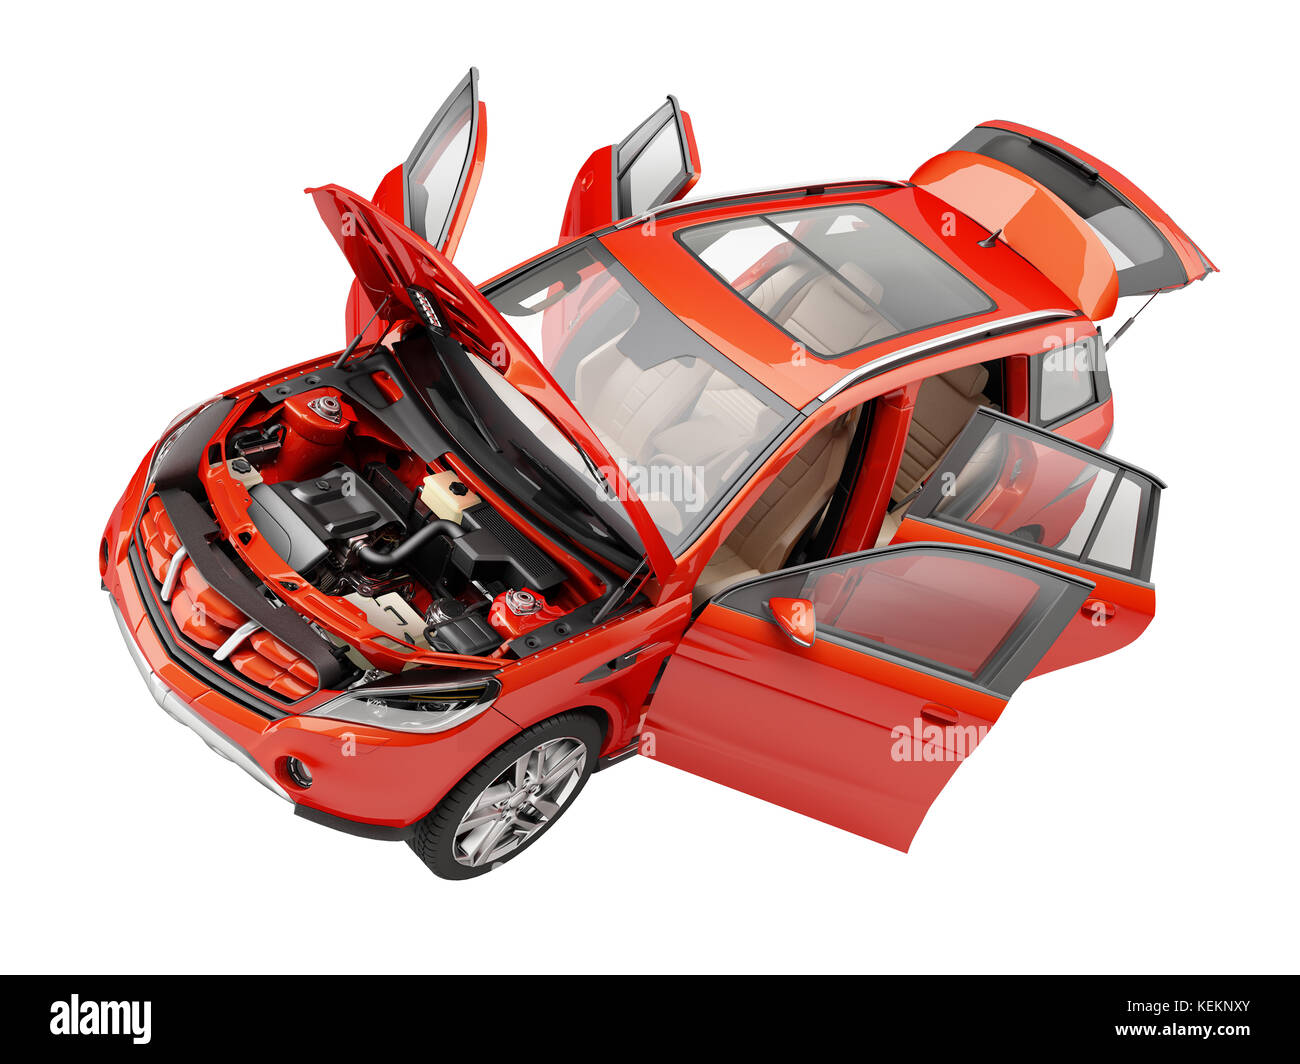 Red SUV-Auto mit alle Türen geöffnet. Die Motorhaube, Motor und Einzelheiten enthalten. Blick von oben. Stockfoto